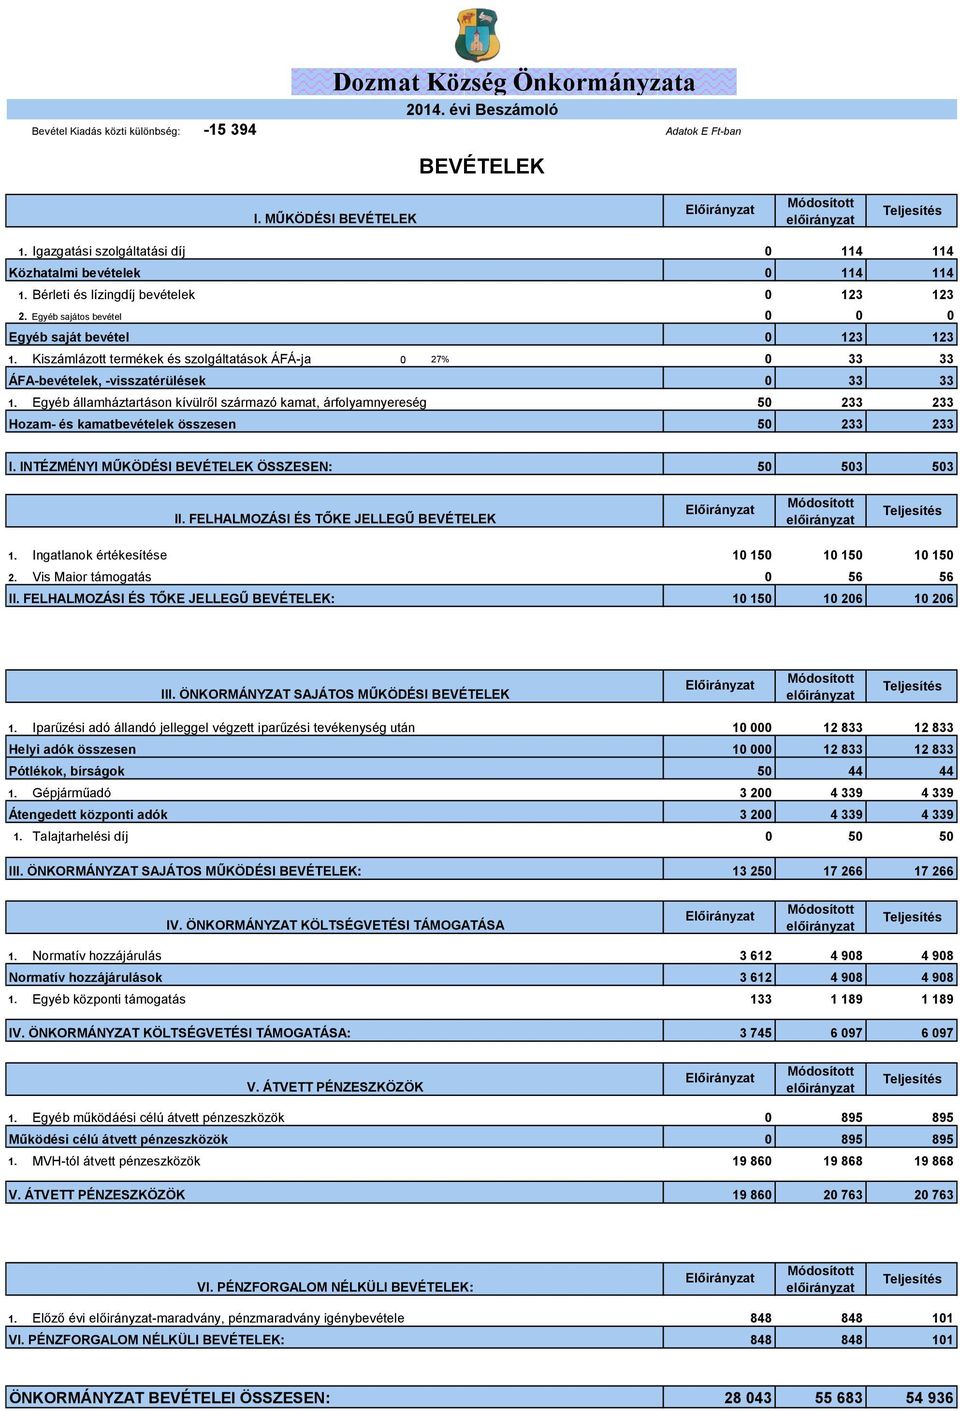 Kiszámlázott termékek és szolgáltatások ÁFÁ-ja 27% 33 33 ÁFA-bevételek, -visszatérülések 33 33 1.